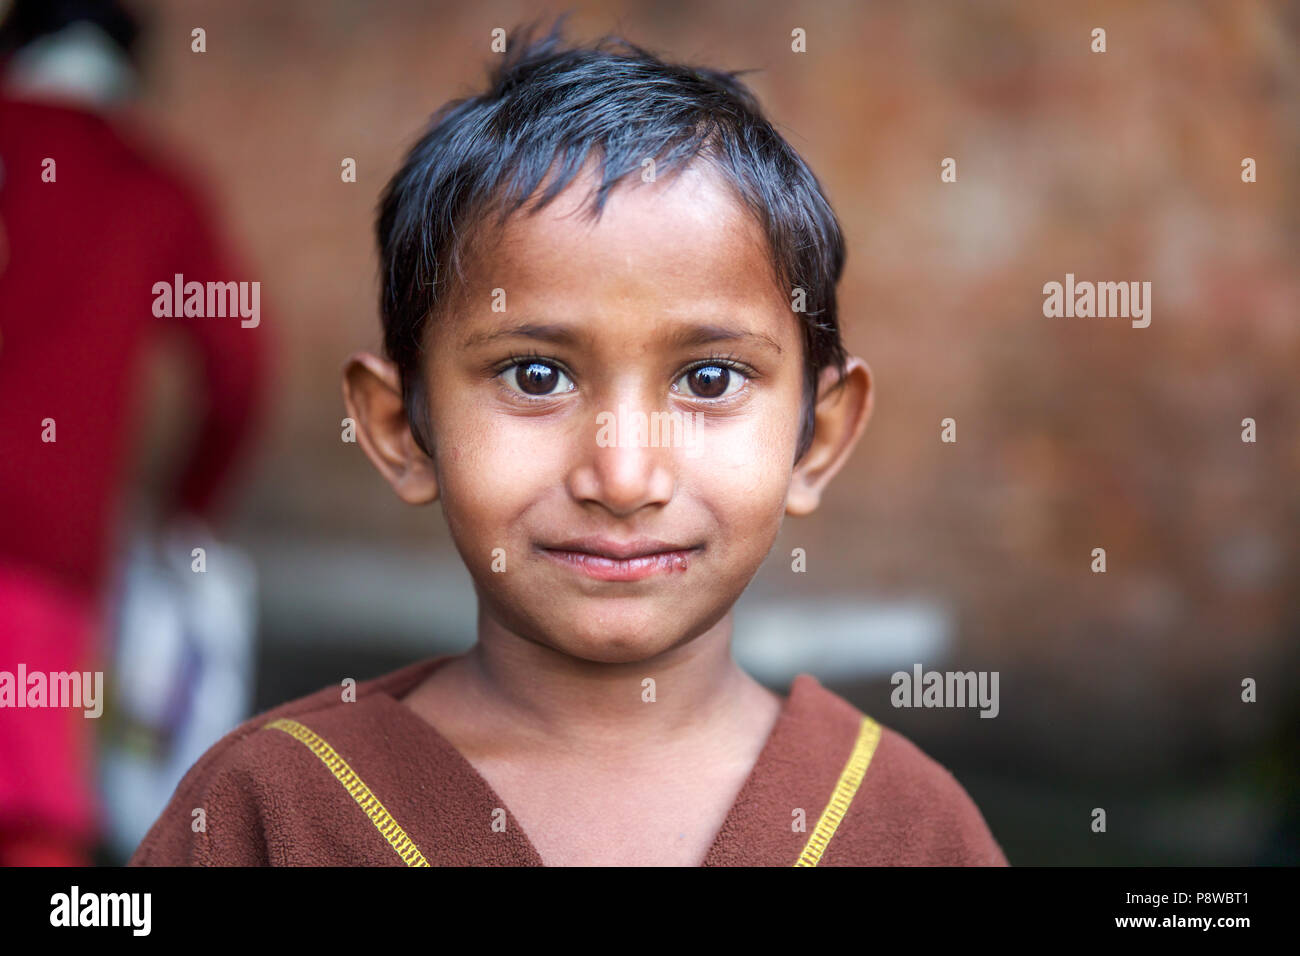 Children of Kolkata - India Stock Photo